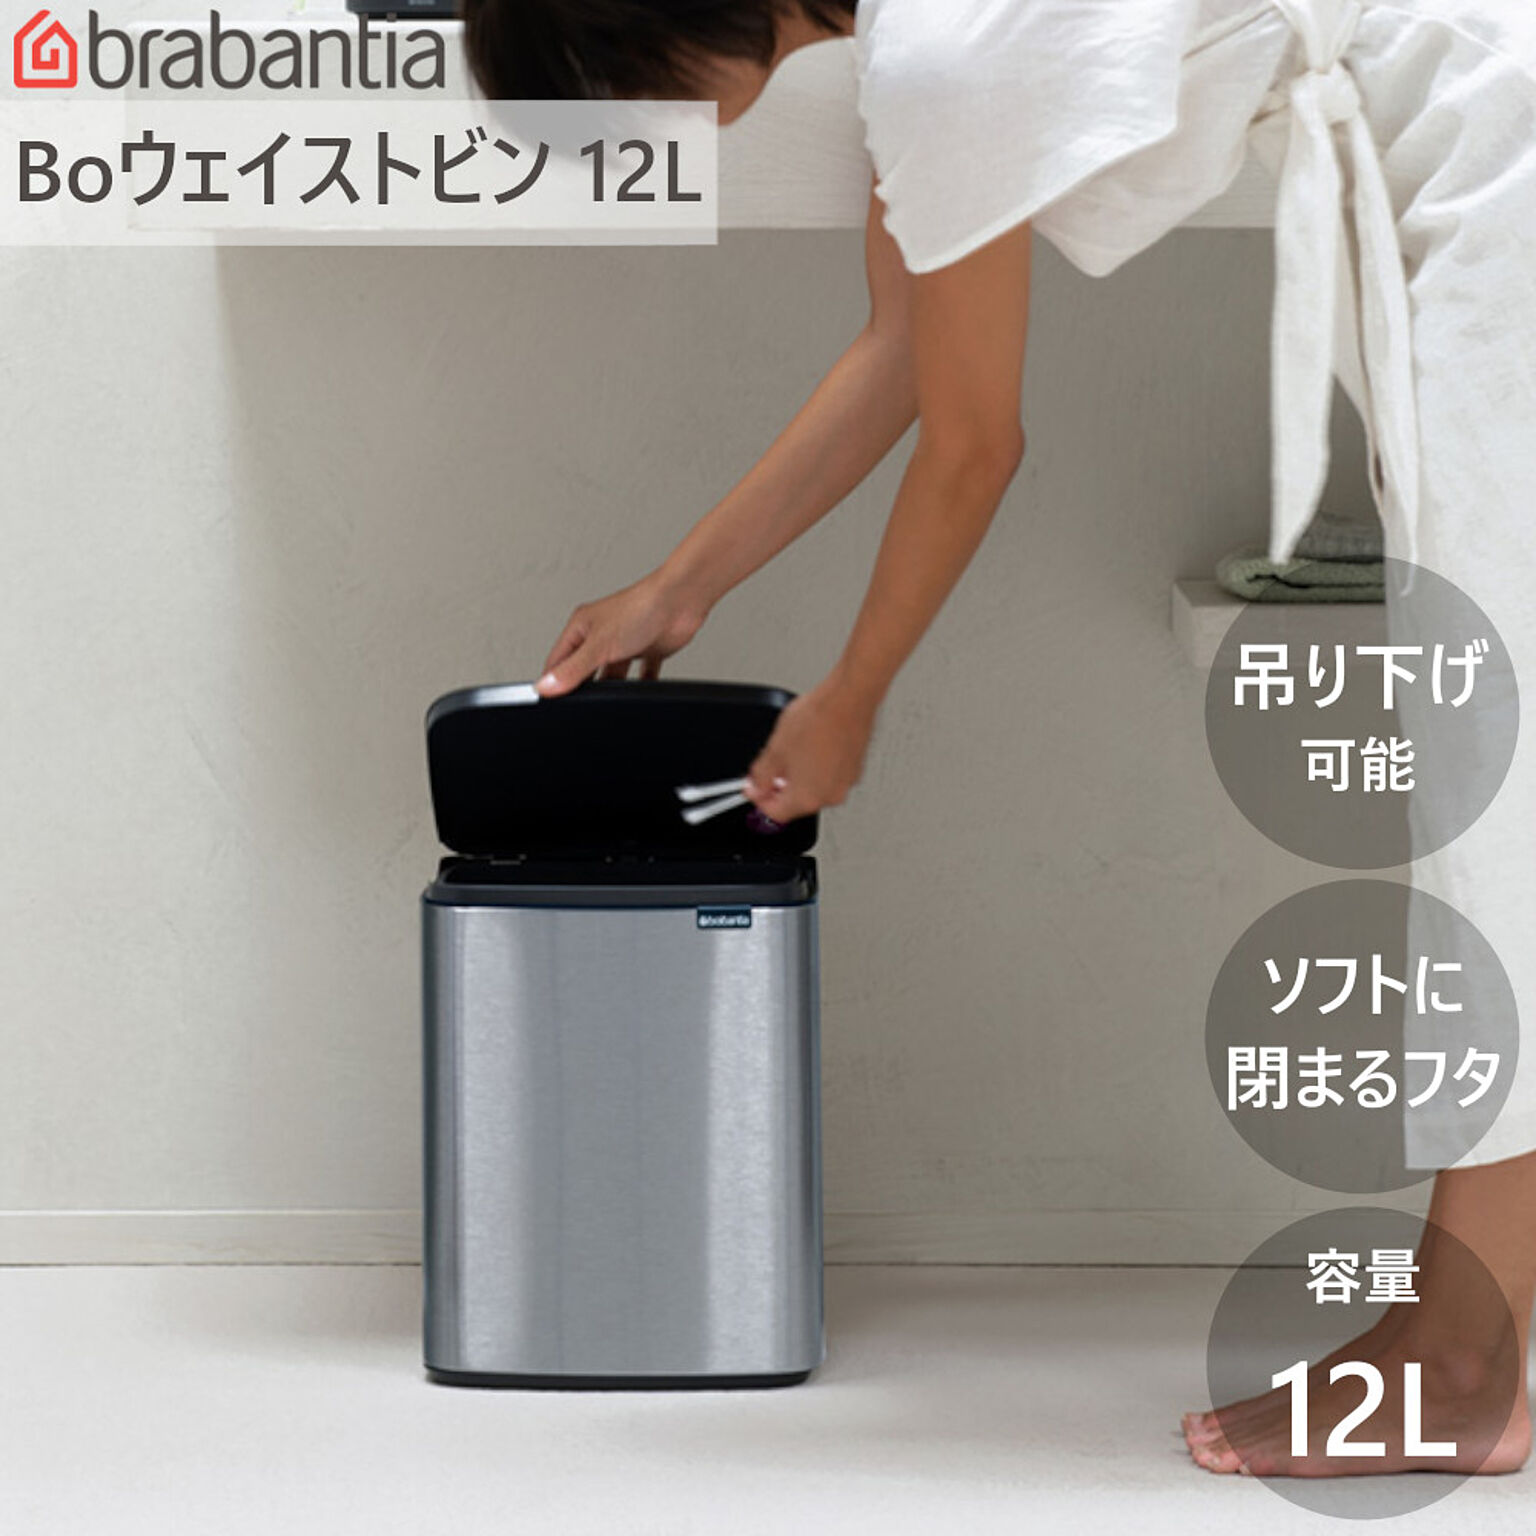 ダストボックス ゴミ箱 Bo ウエイストビン 12L ブラバンシア ウェイストビン 洗面 トイレ 手動式 蓋付